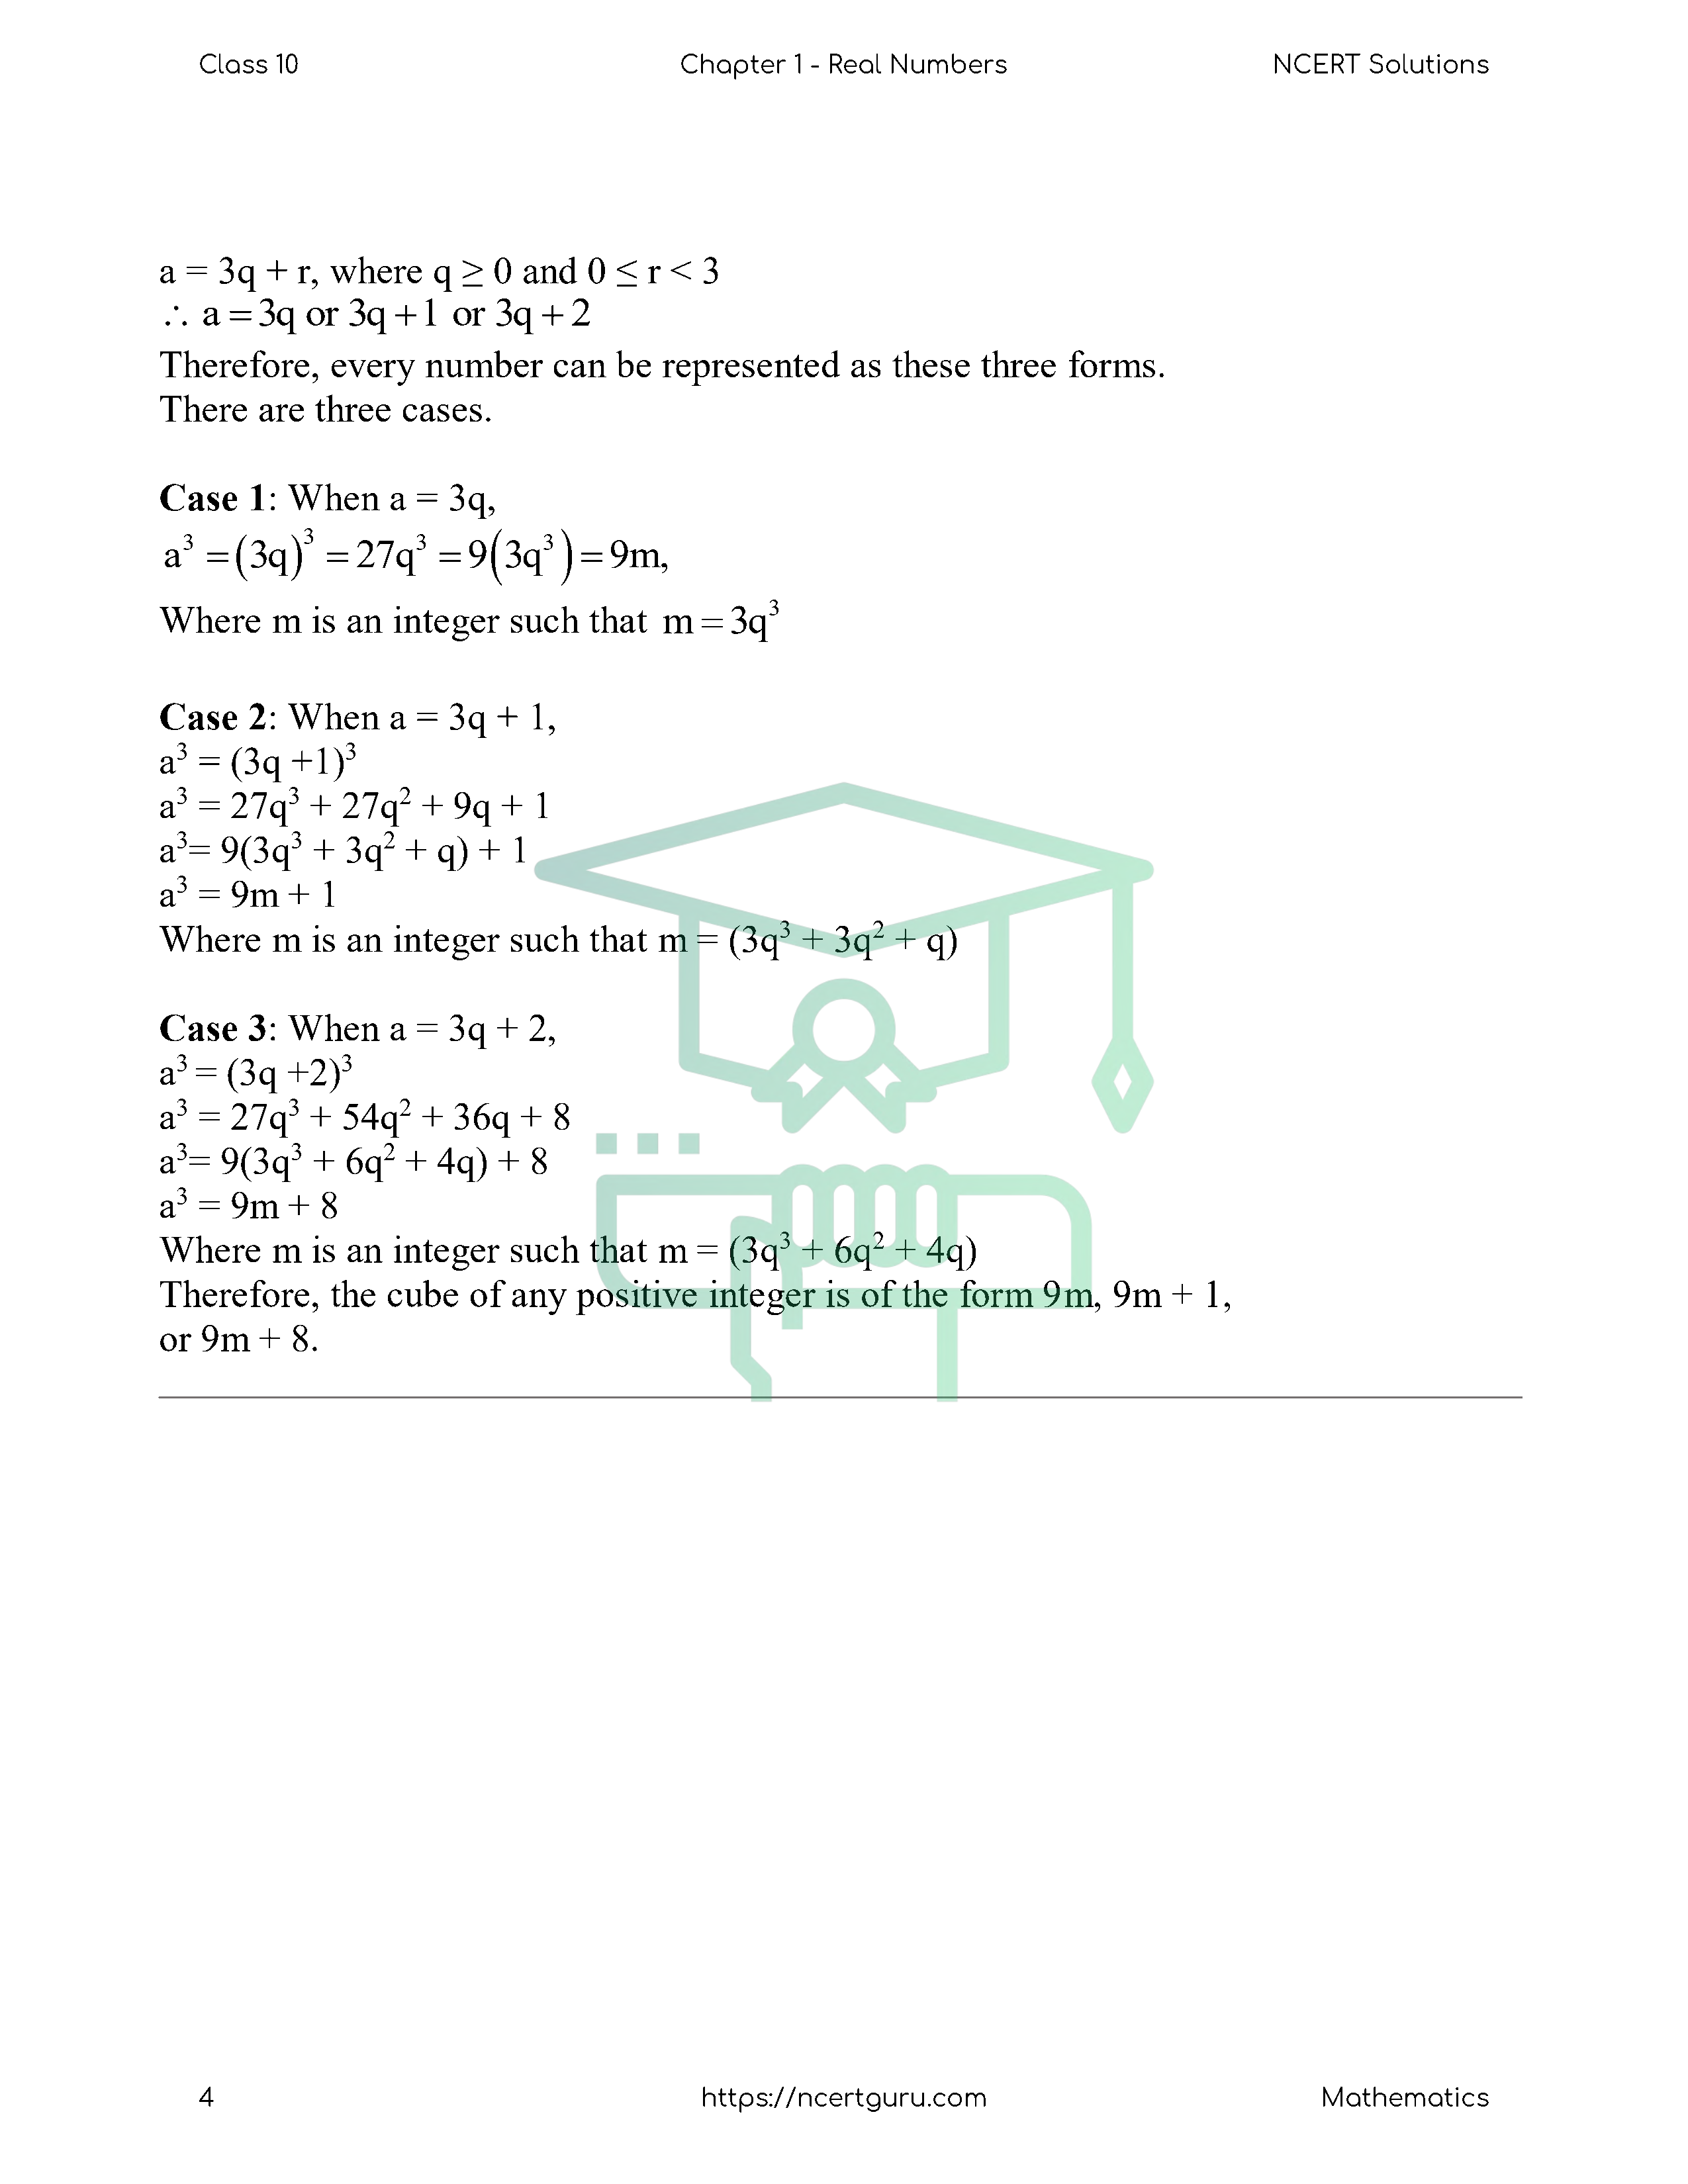 NCERT Solutions for Class 10 Maths Chapter 1